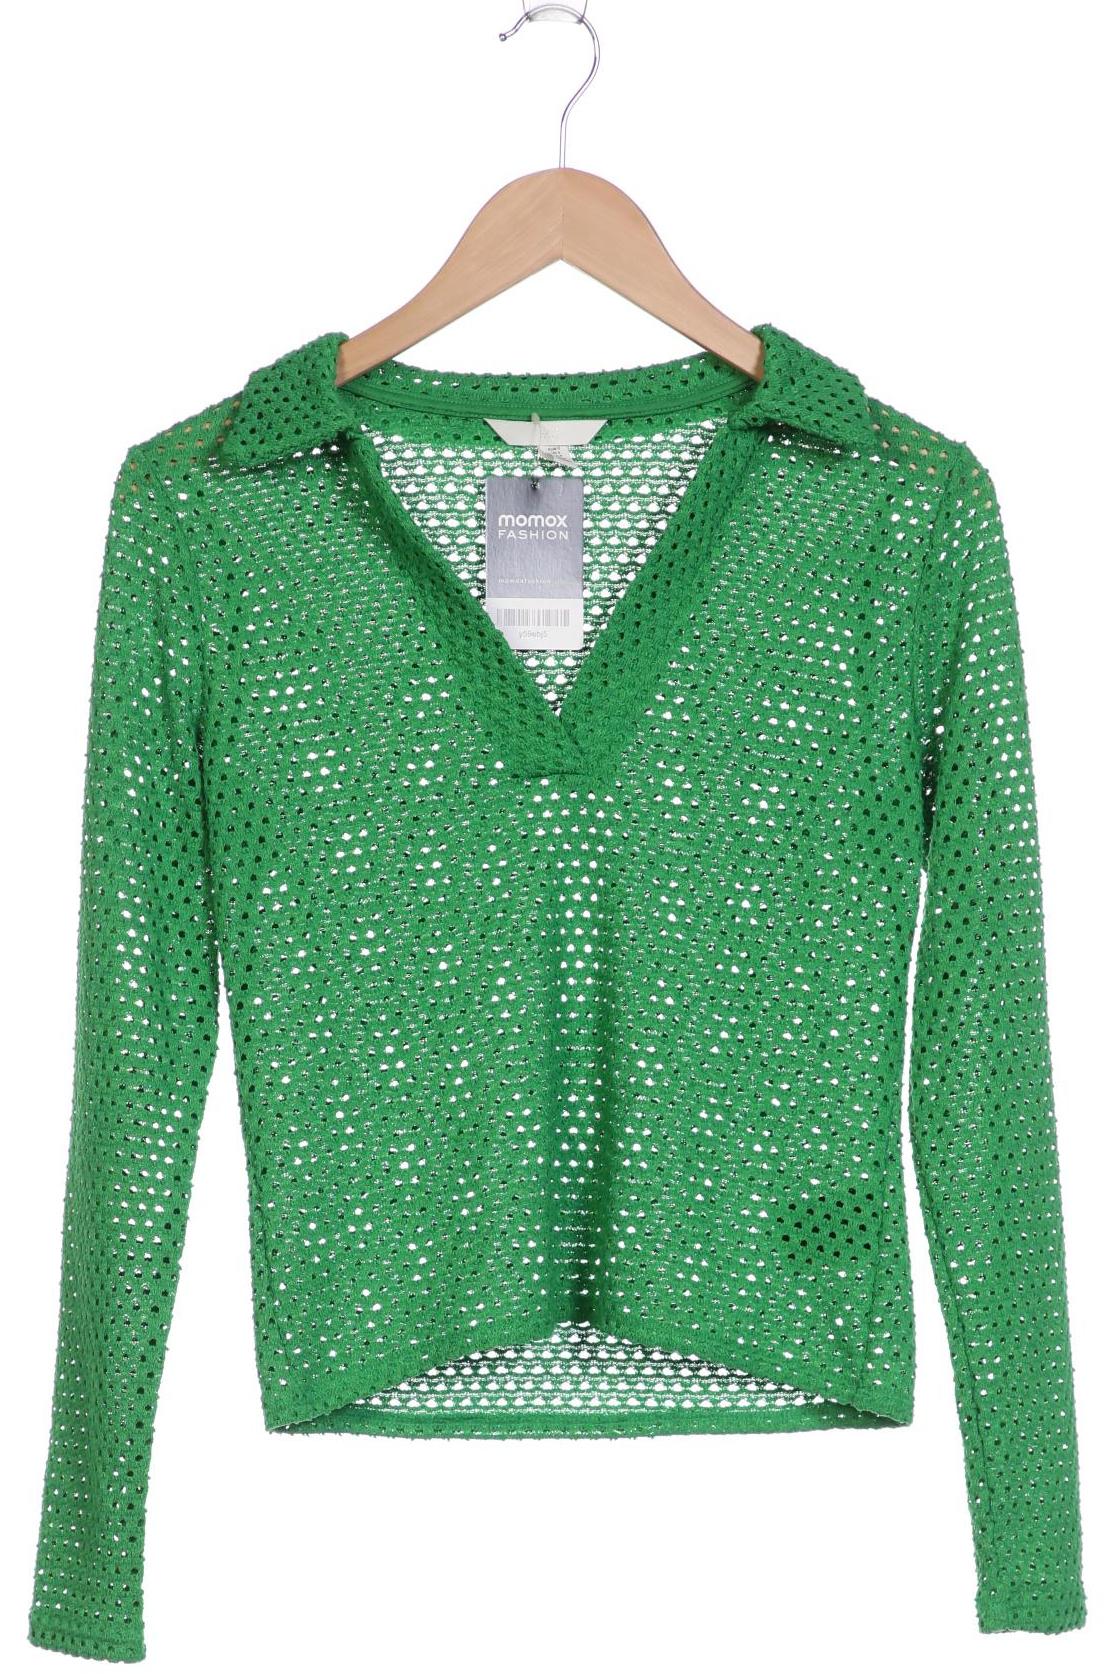 H&M Damen Pullover, grün von H&M